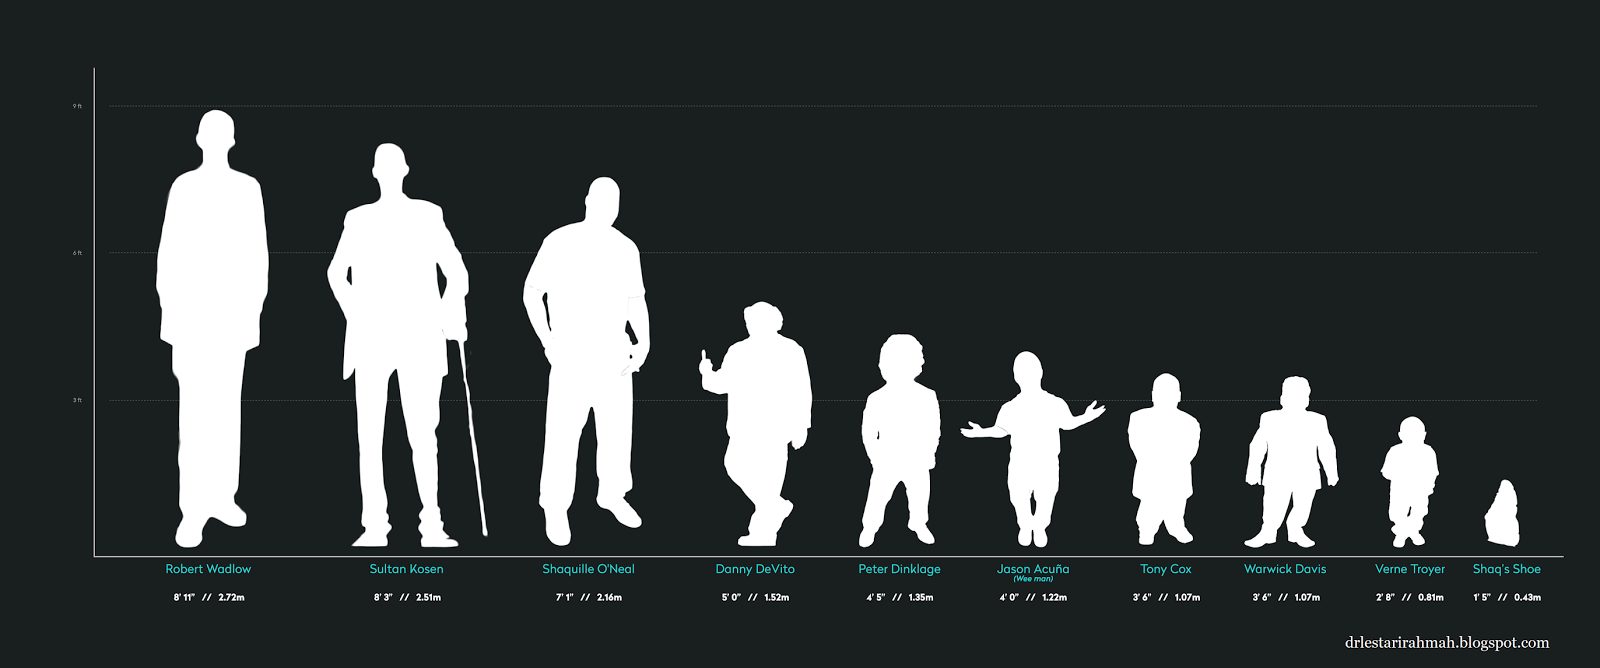 Были ниже по сравнению с. Рост человека. Сравнения рогсгта человека. Люди по росту. Сравнение роса человека.